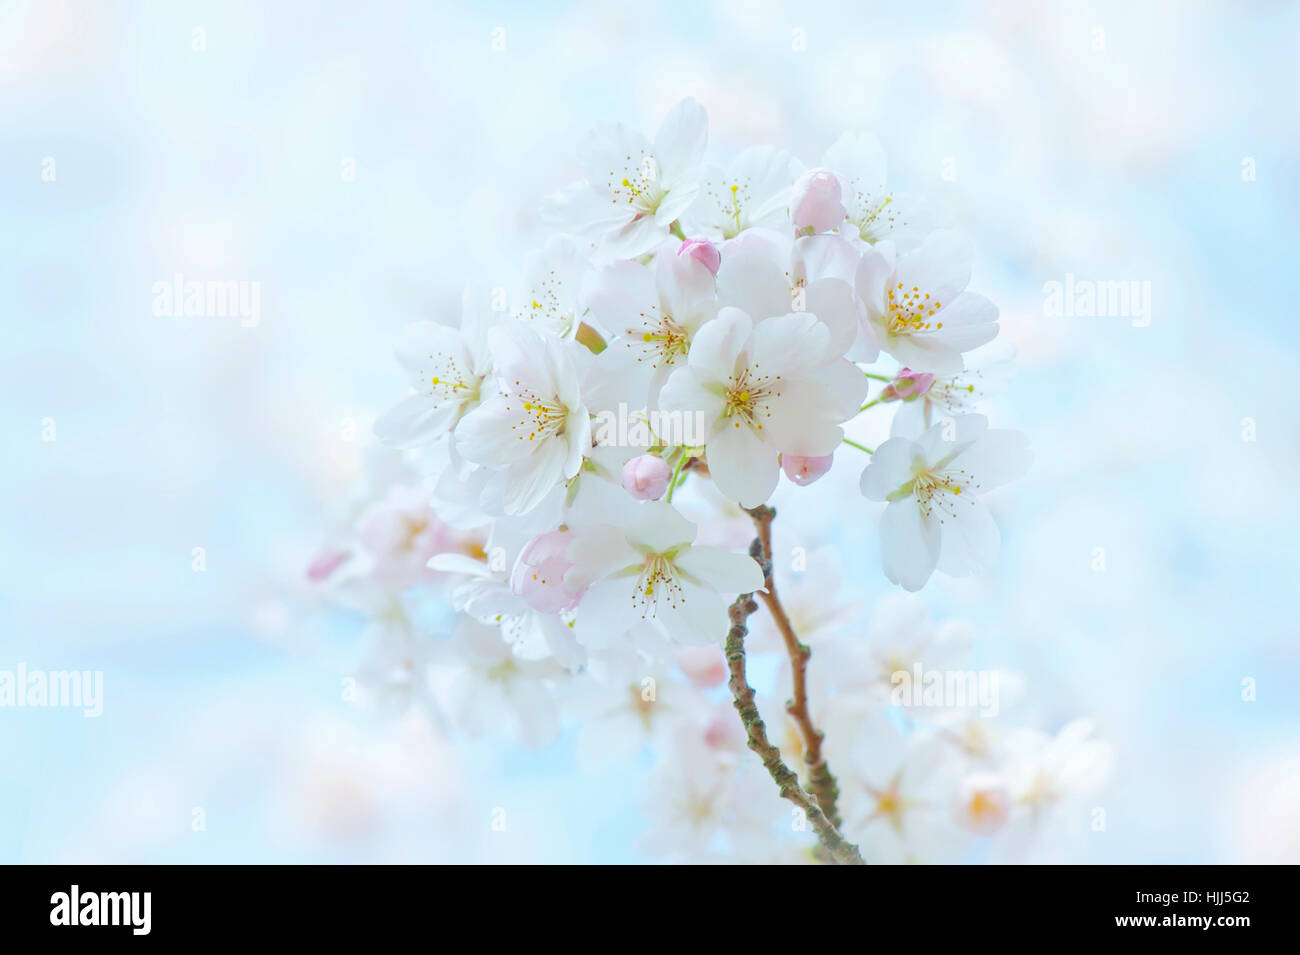 Image en gros plan de la délicate fleur de printemps blanc de l'arbre de cerise Yoshino, les images prises à l'encontre d'un ciel bleu. Banque D'Images